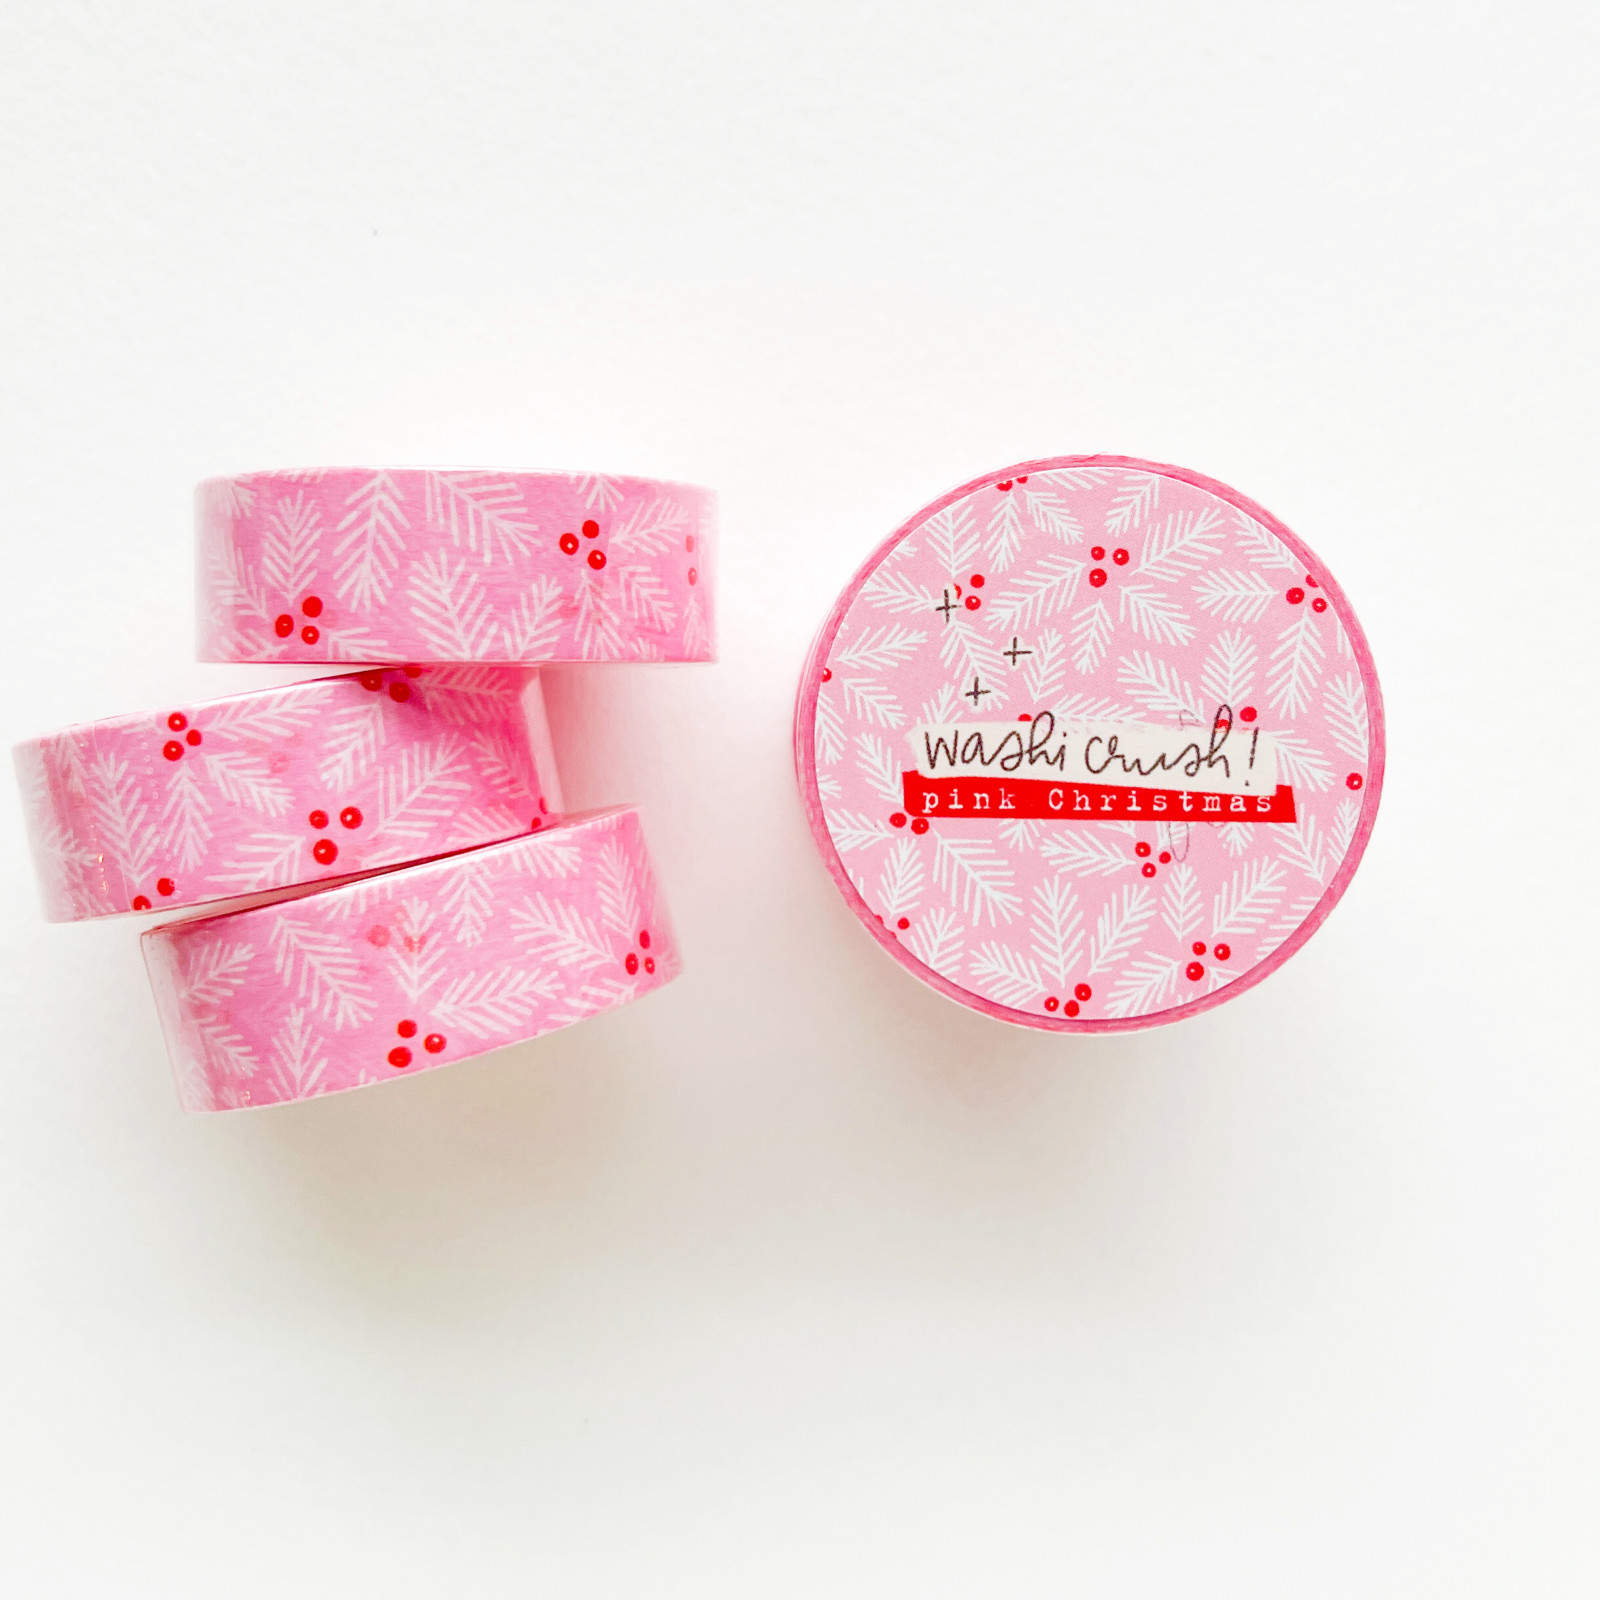 Pink Christmas Washi Tape